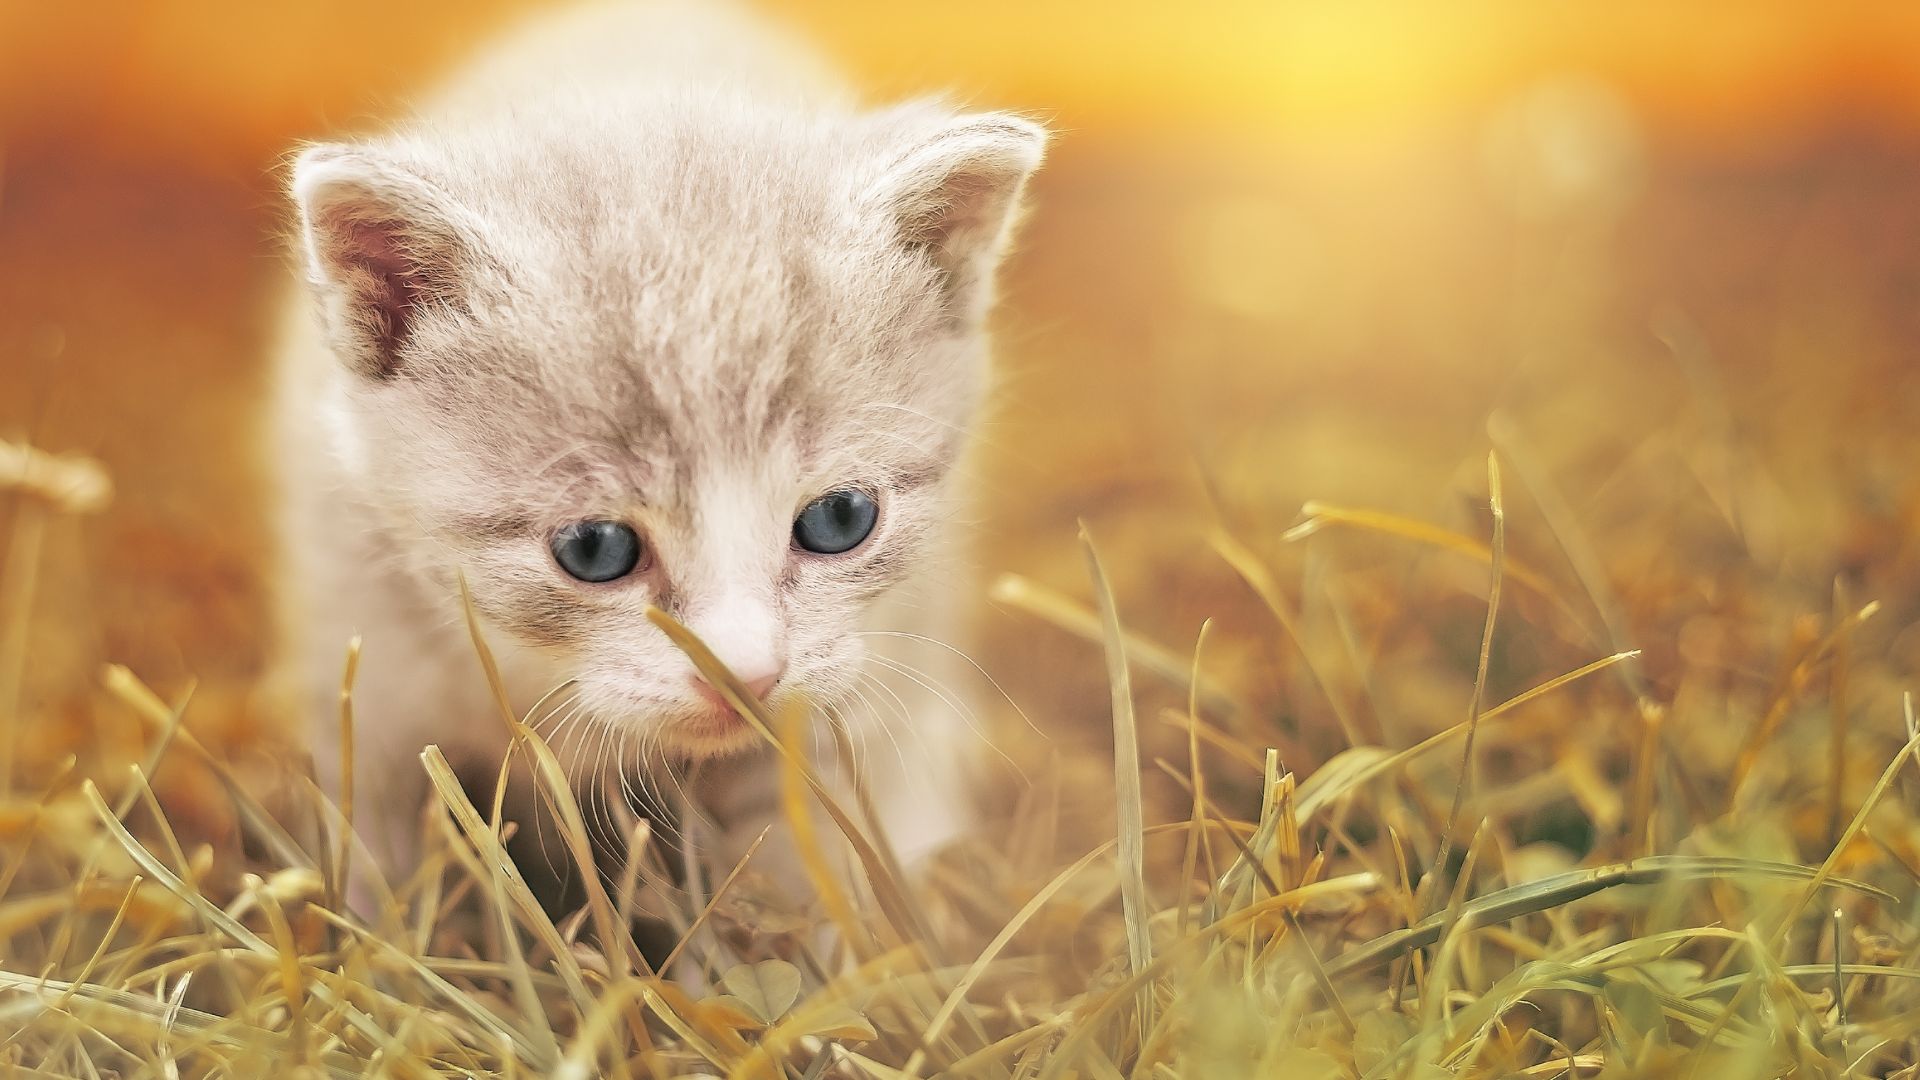 Wallpaper Cute kitten, walk, grass, animal